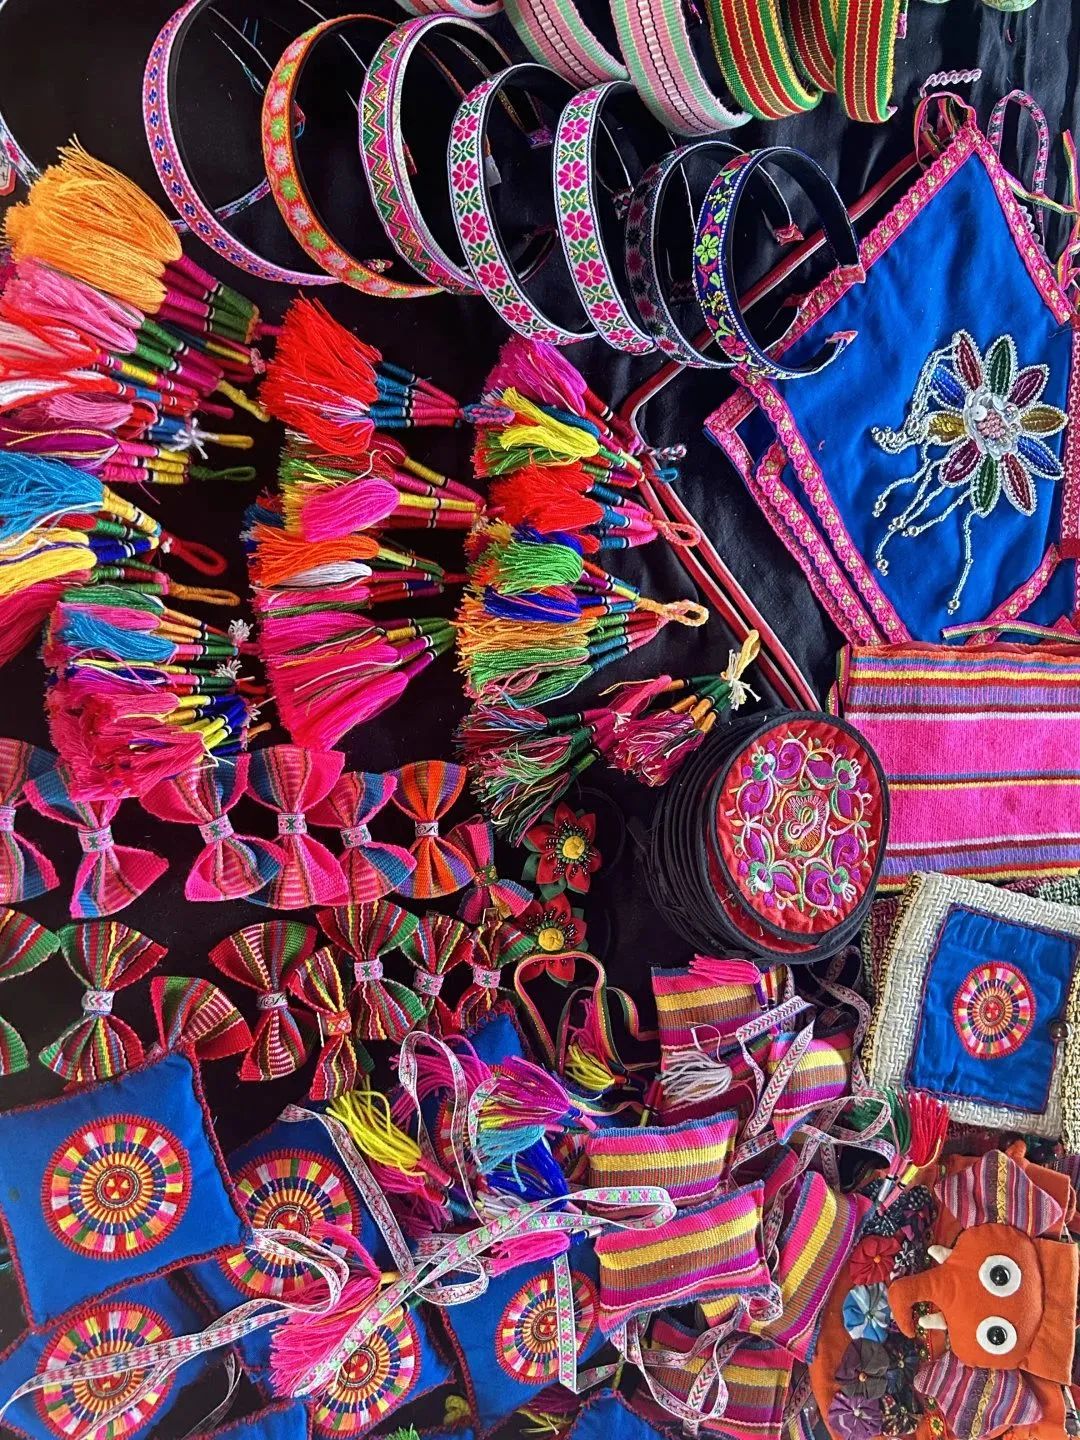 如今,沙都带着基诺族的织锦技艺走到了首都北京,将基诺族的纺线和织布